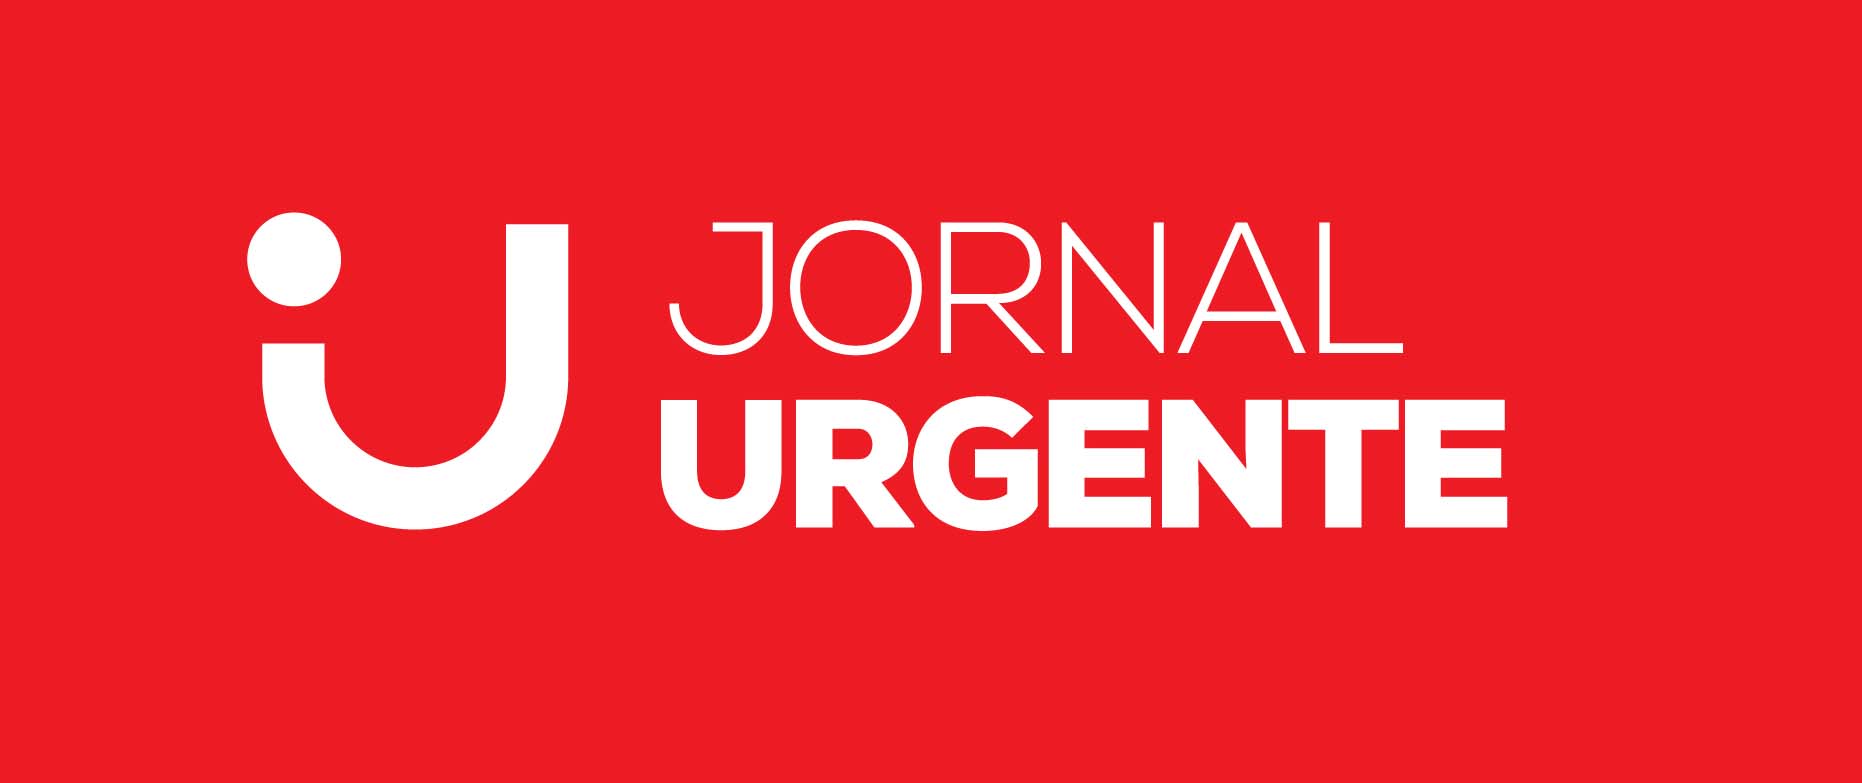 Jornal Urgente - Jornalismo cívico e inteligente